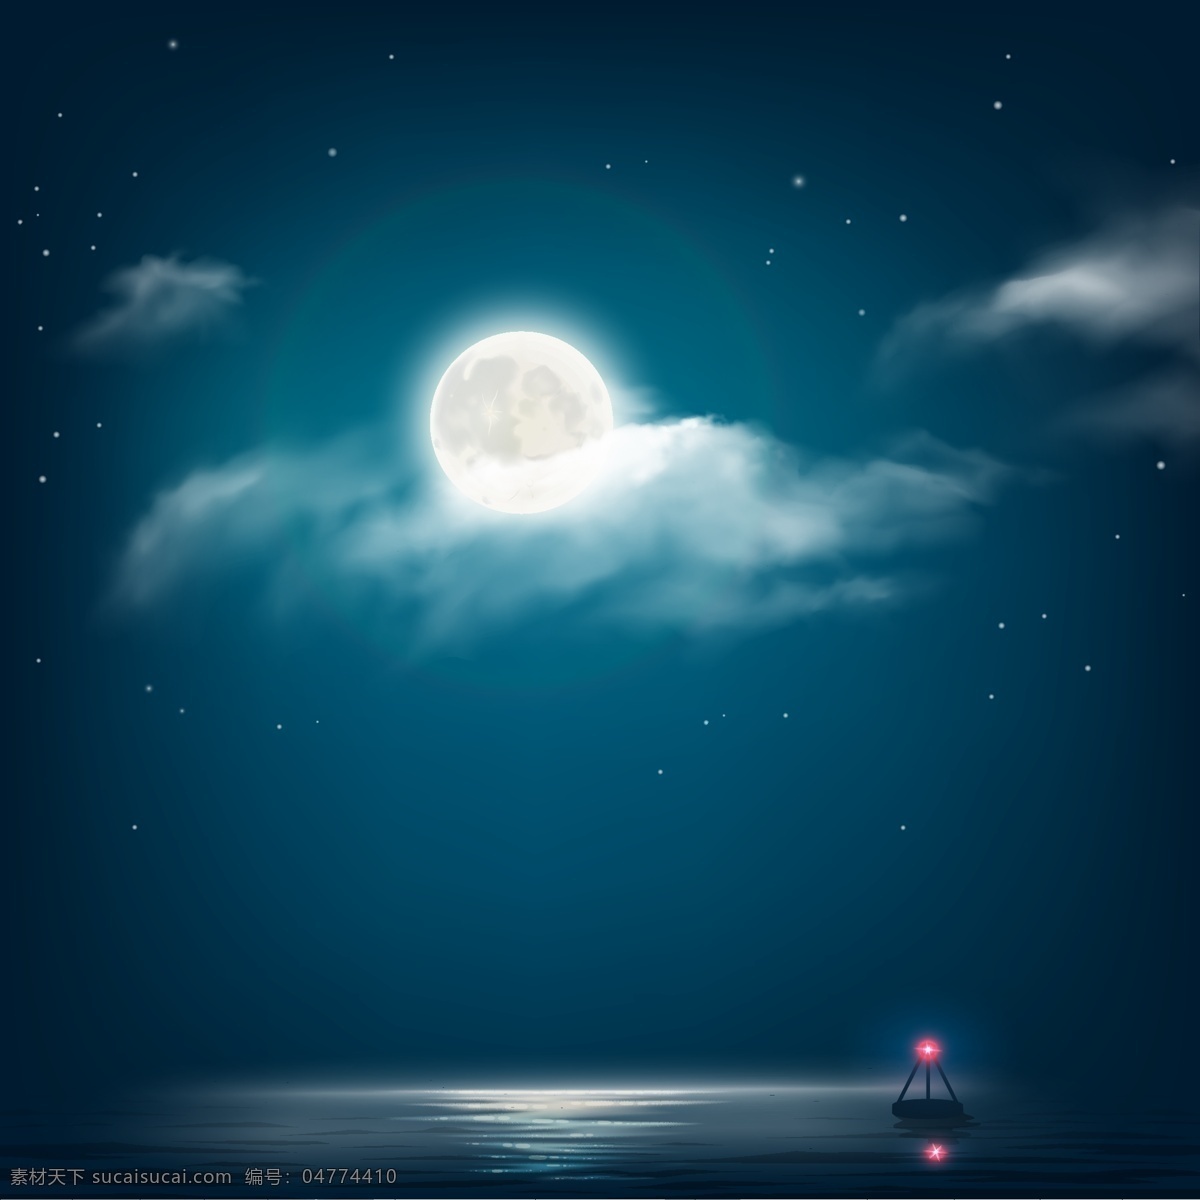 夜色 下 海面 风景 插画 月亮 云朵 星空 蓝色 夜空 水面 灯塔 夜晚 景色 静谧的夜色 大自然